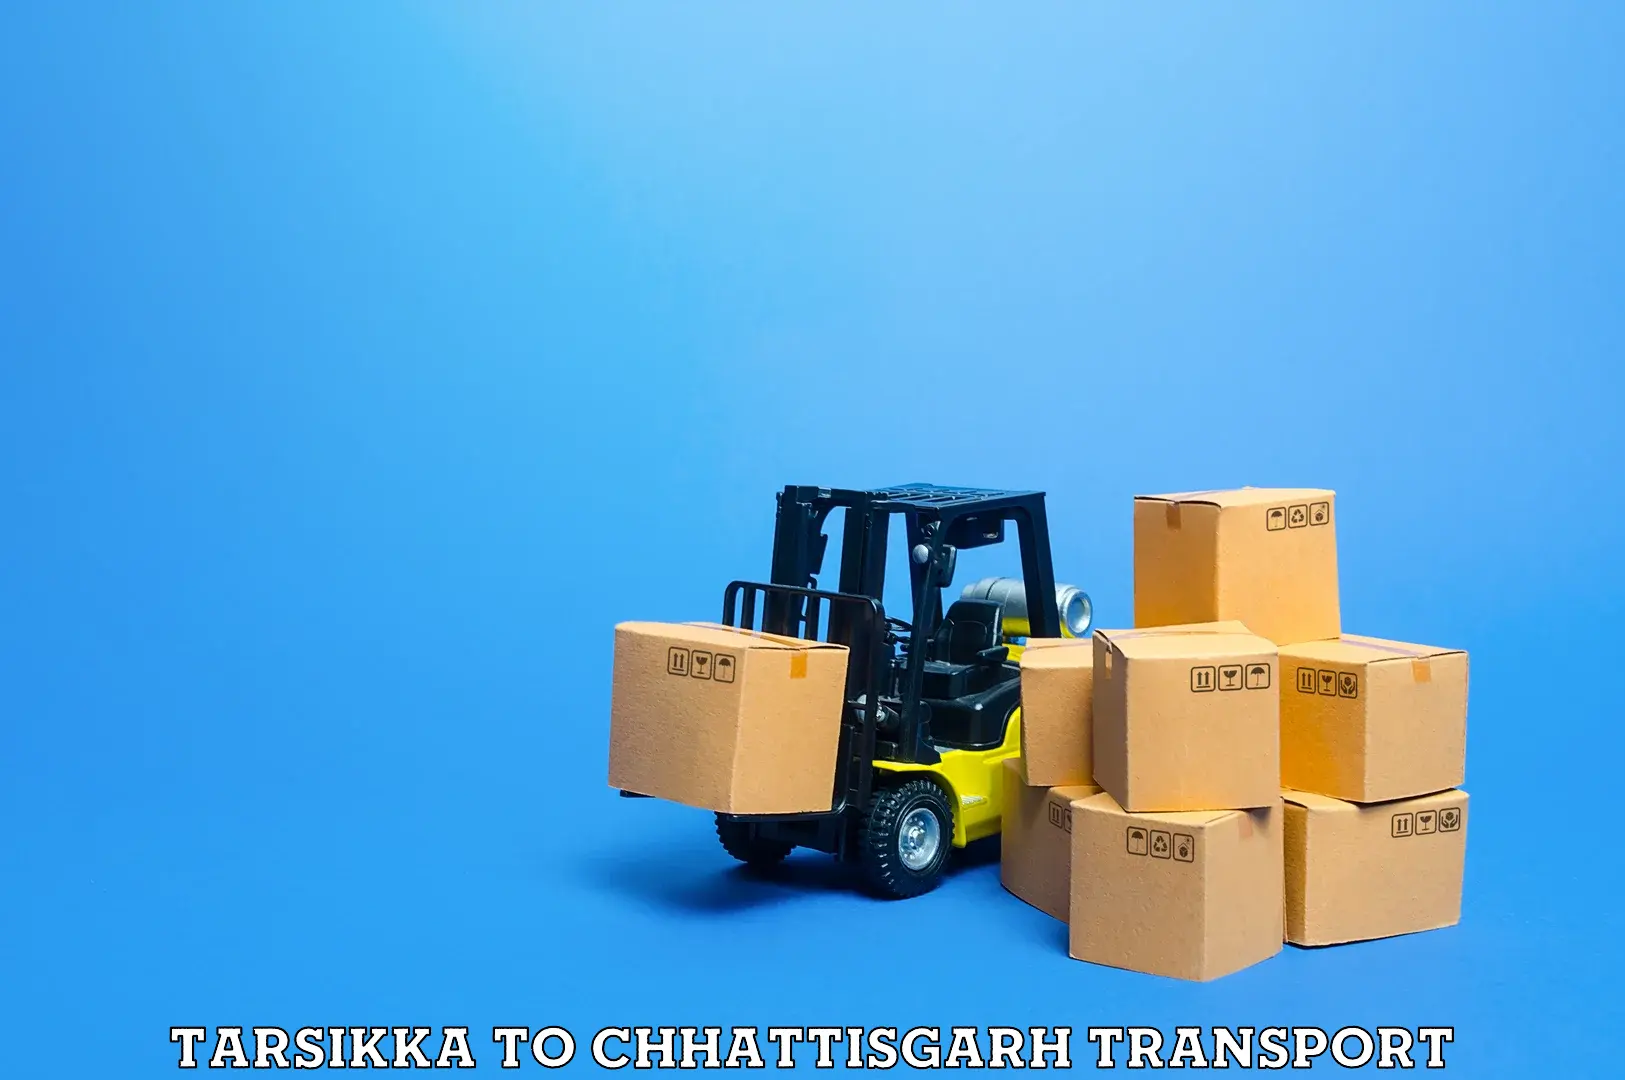 Commercial transport service Tarsikka to Chhattisgarh